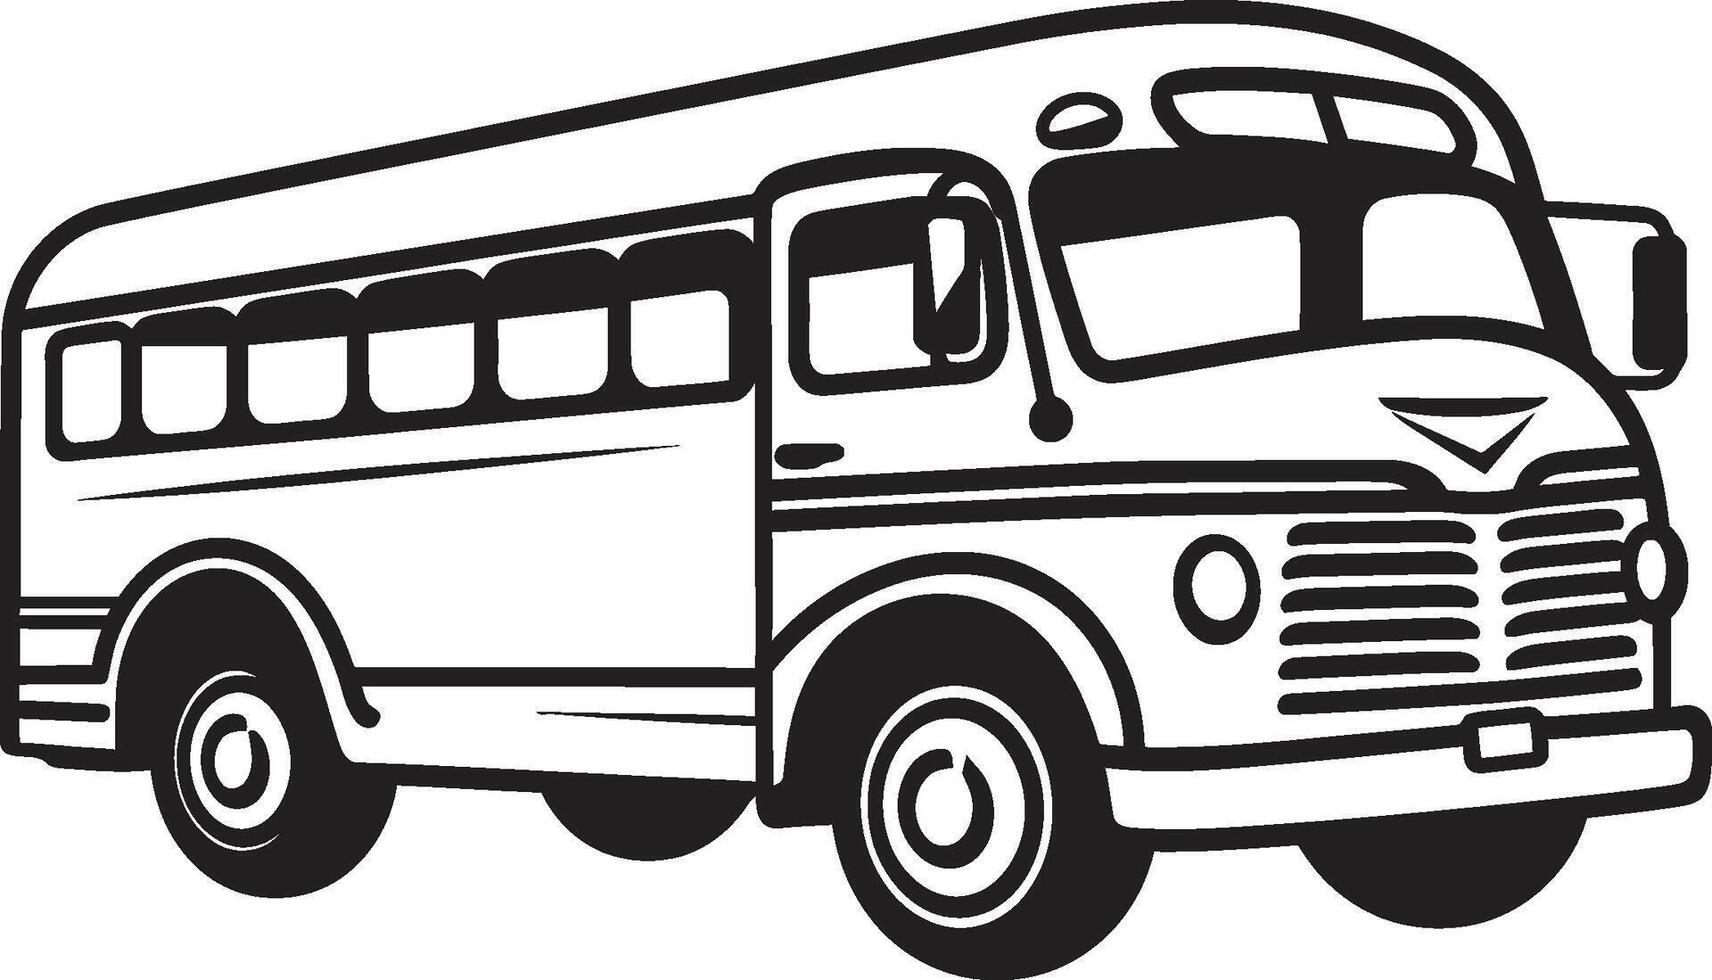 viaggio splendore monocromatico autobus simbolo urbano viaggio nero vettore logo